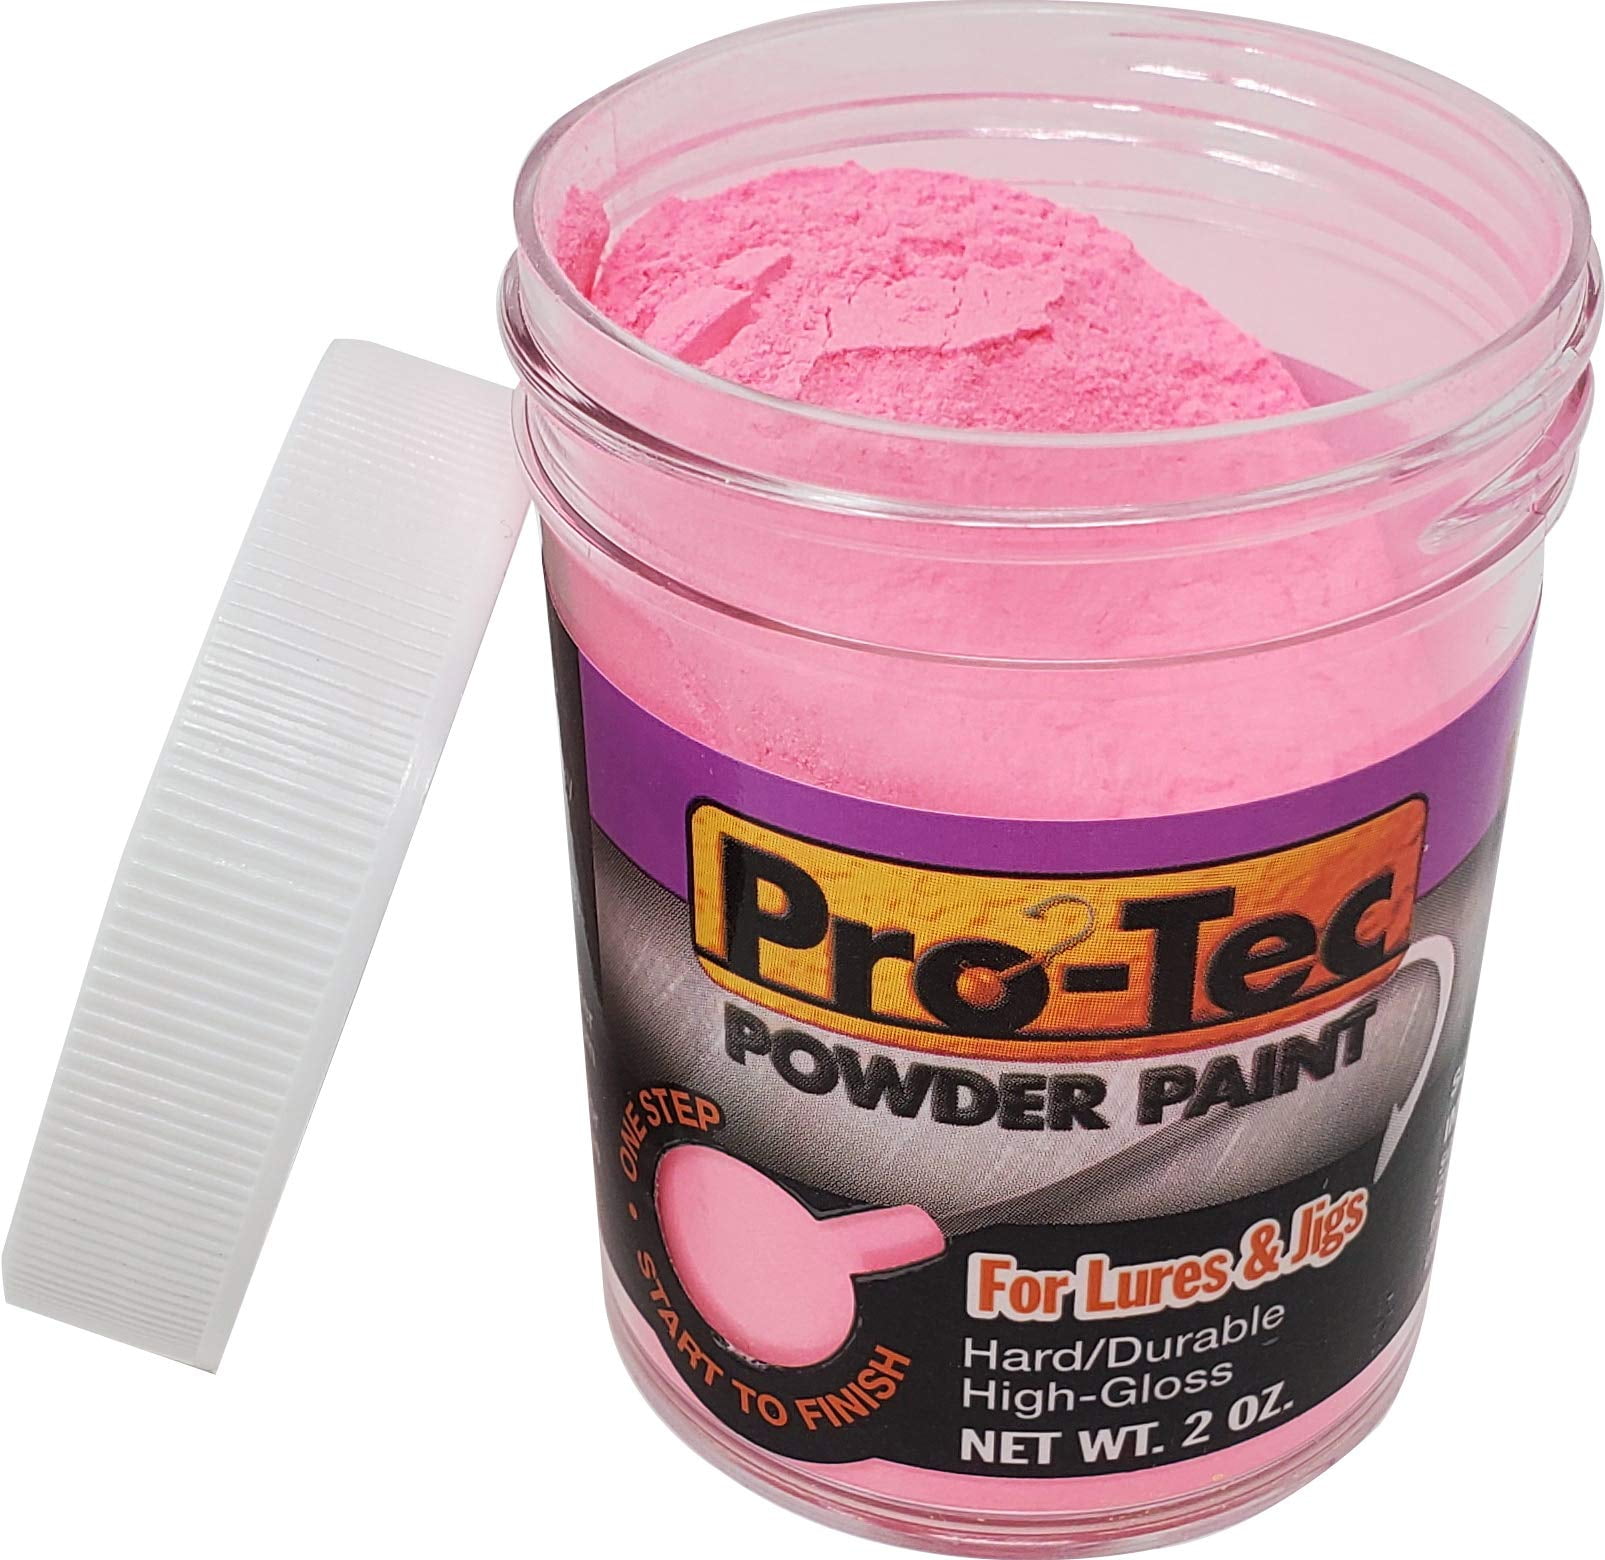 Pro-Tec Powder Paint Transparent Candy Colors 1Lb. Bottles - Barlow's Tackle